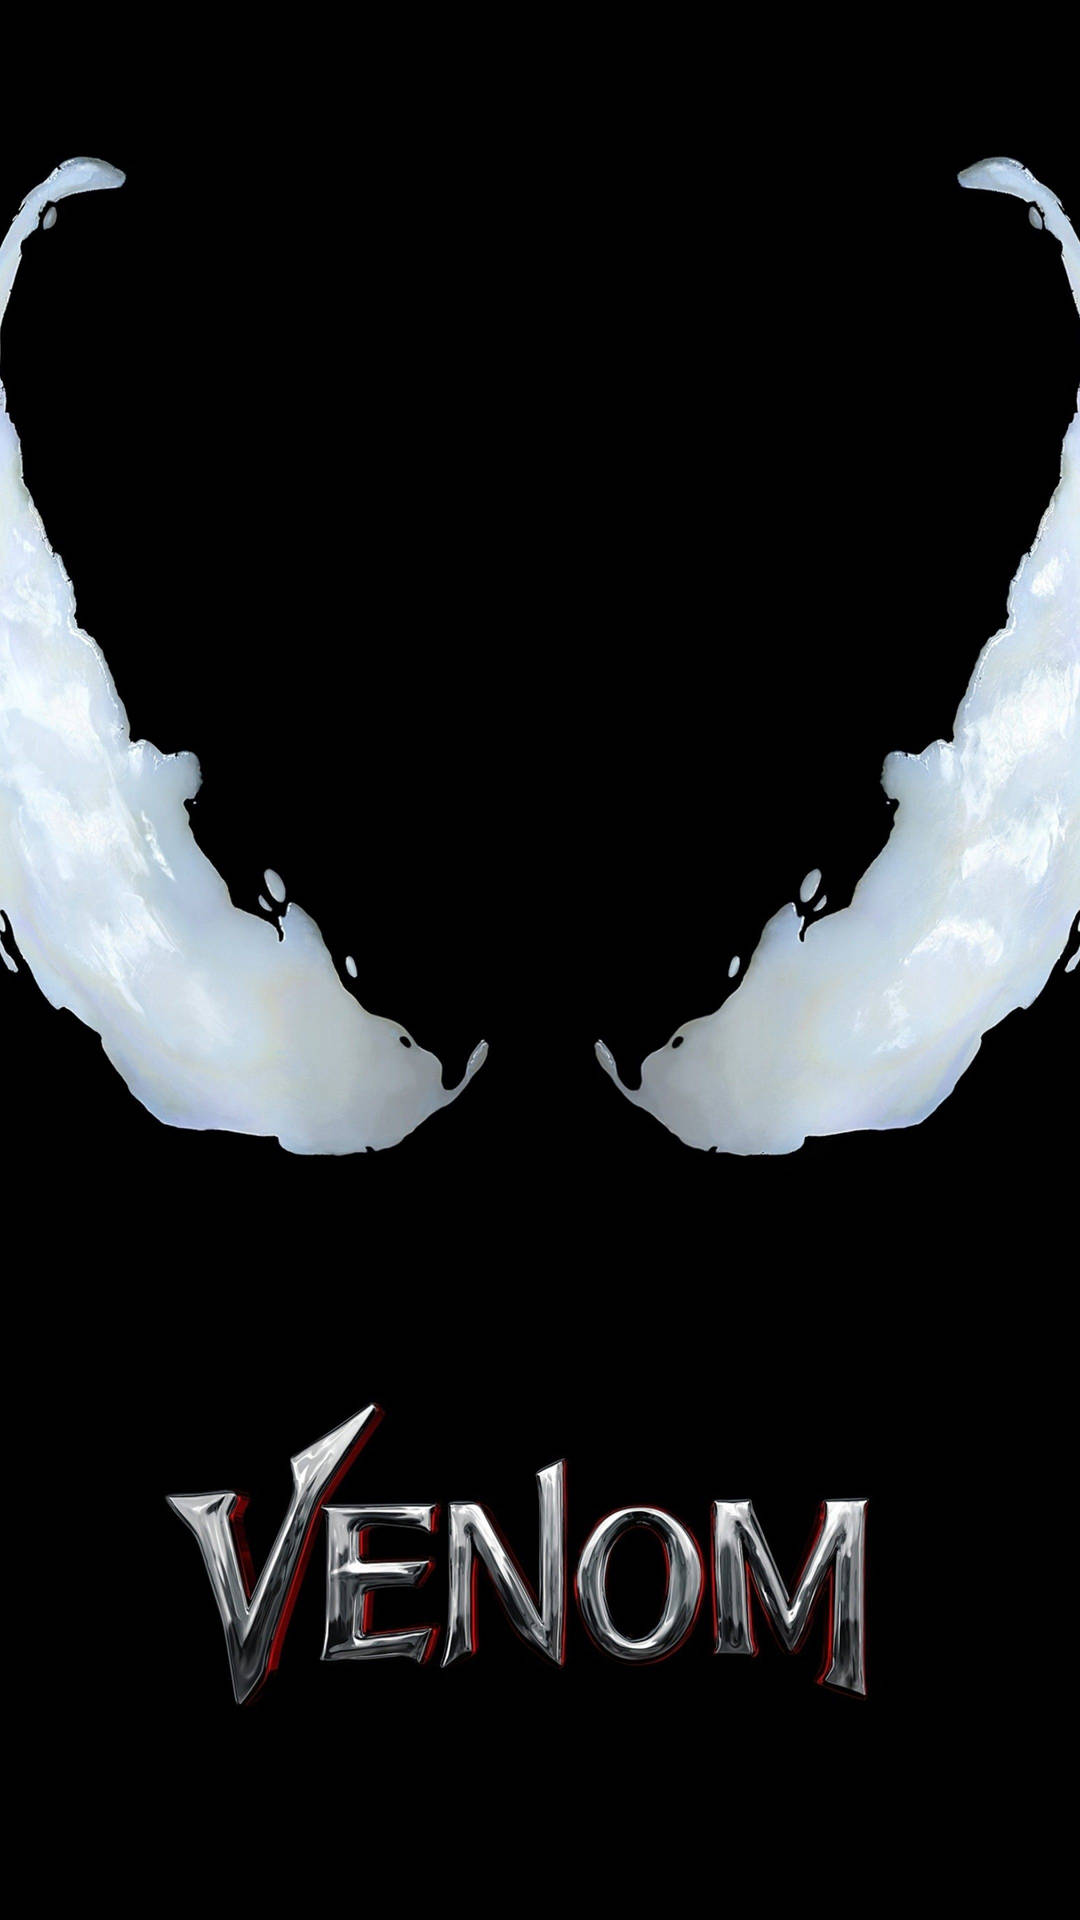 Venom Movie 2018 Poster